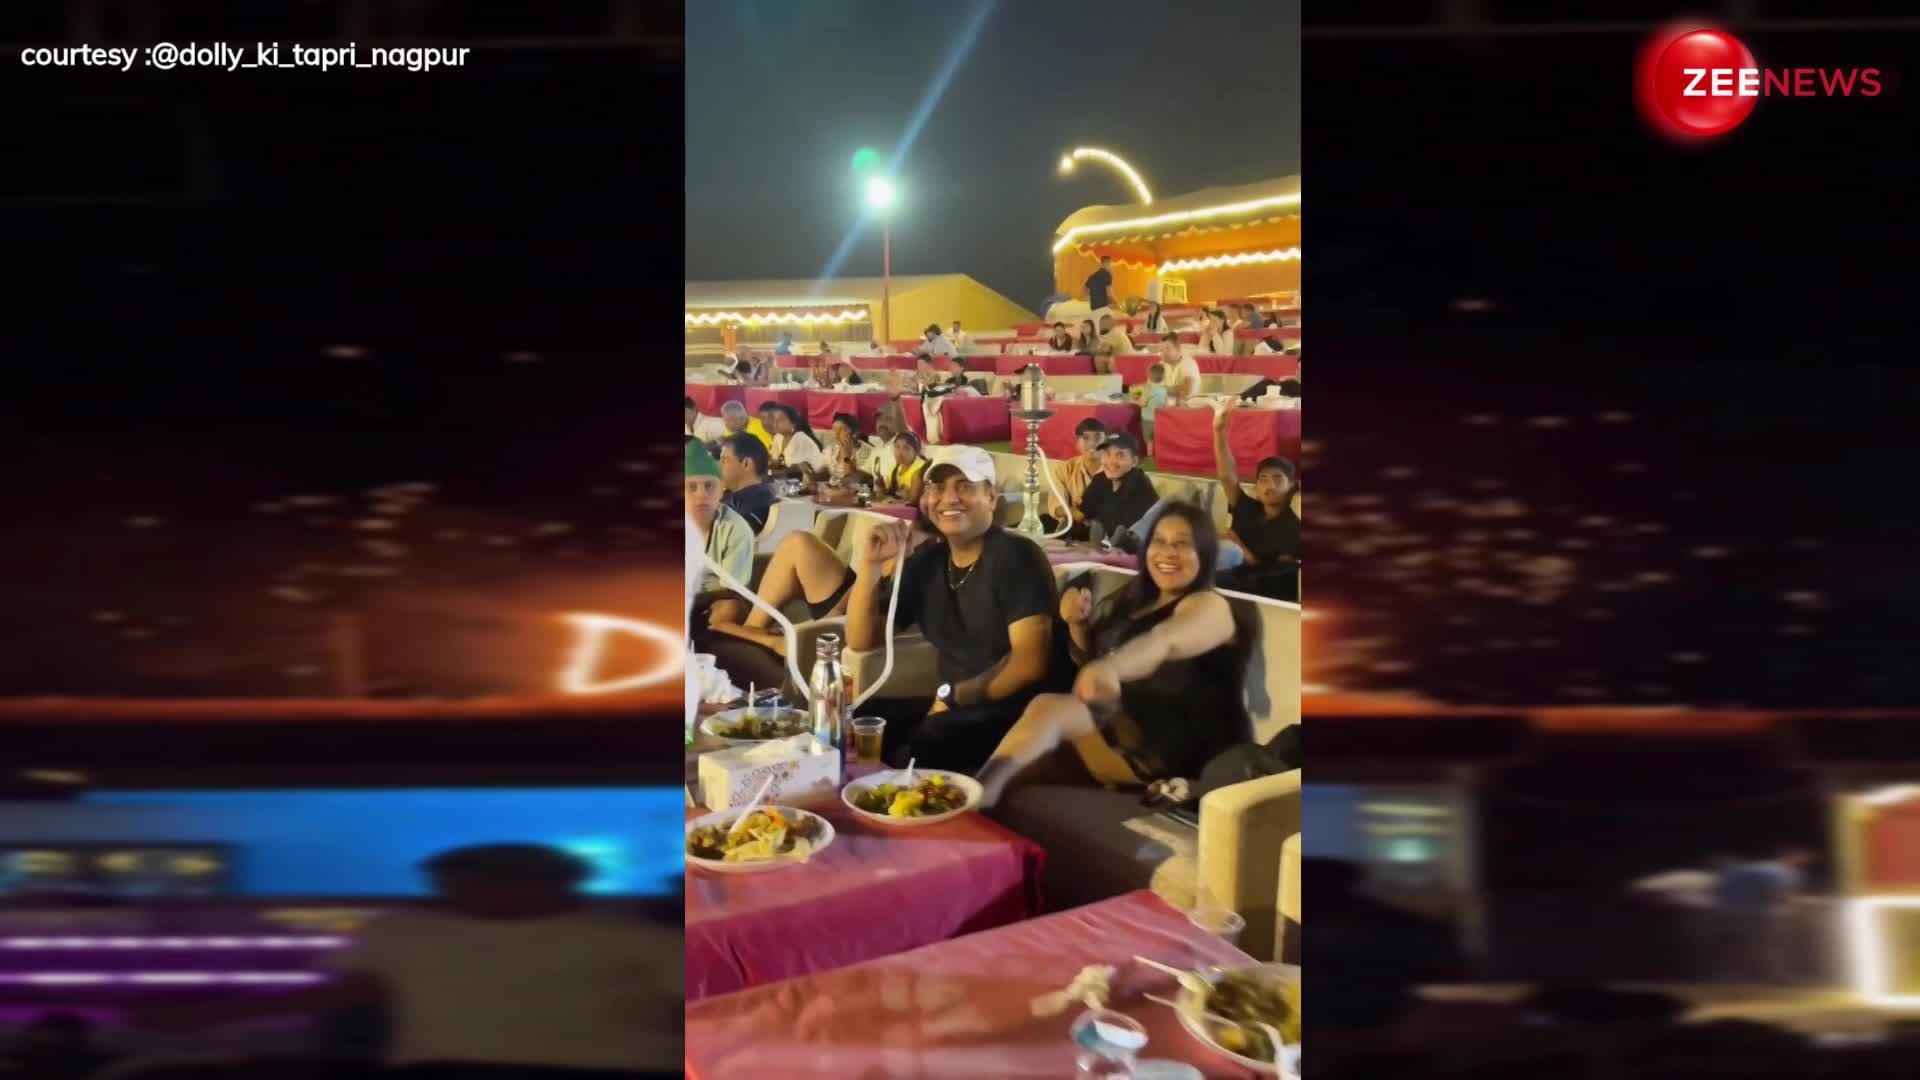 चाय की दुकान से निकलकर Dubai के बेली डांस शो में पहुंचे डॉली, इंटरनेट पर बवाल मचा रहा ये Video